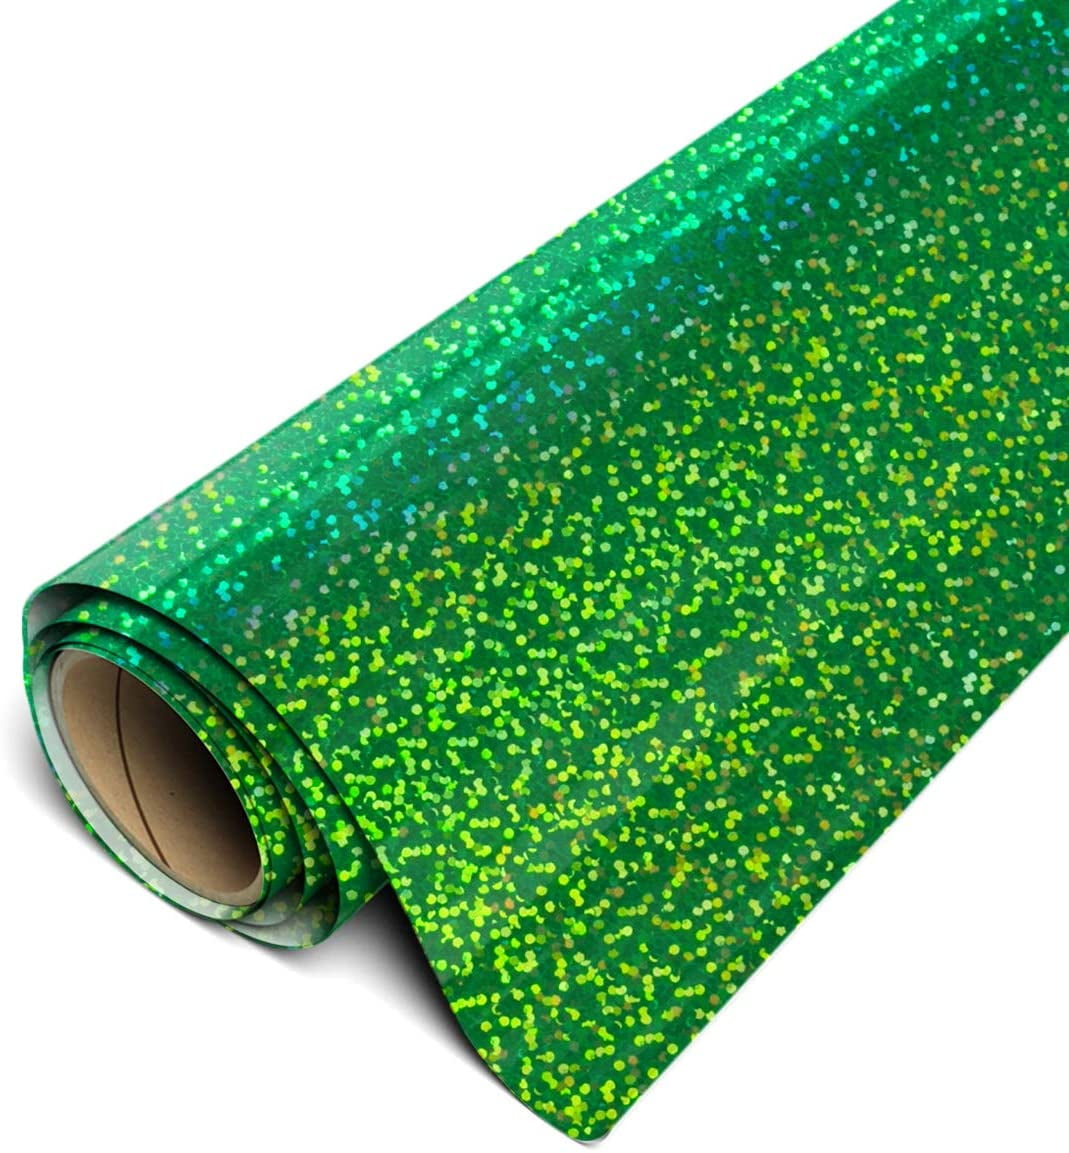 Siser Glitter Heat Transfer Vinyl (HTV) 20 x 150 ft Roll - 45 Colors Available, Green (Grass)